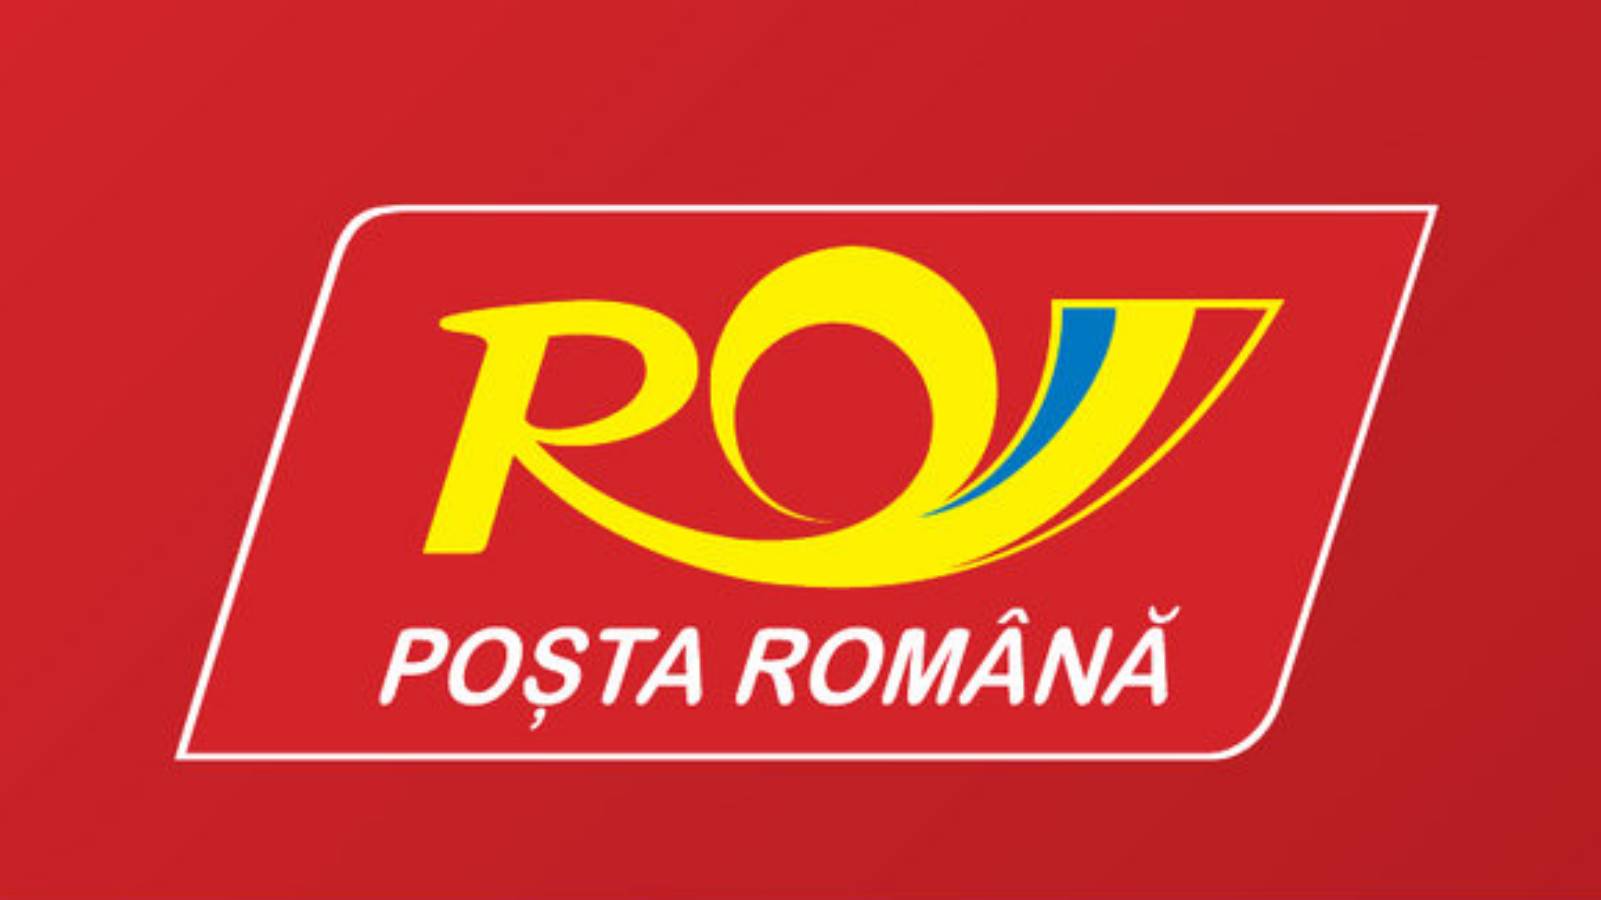 Nachricht der rumänischen Post mit versichertem Wert